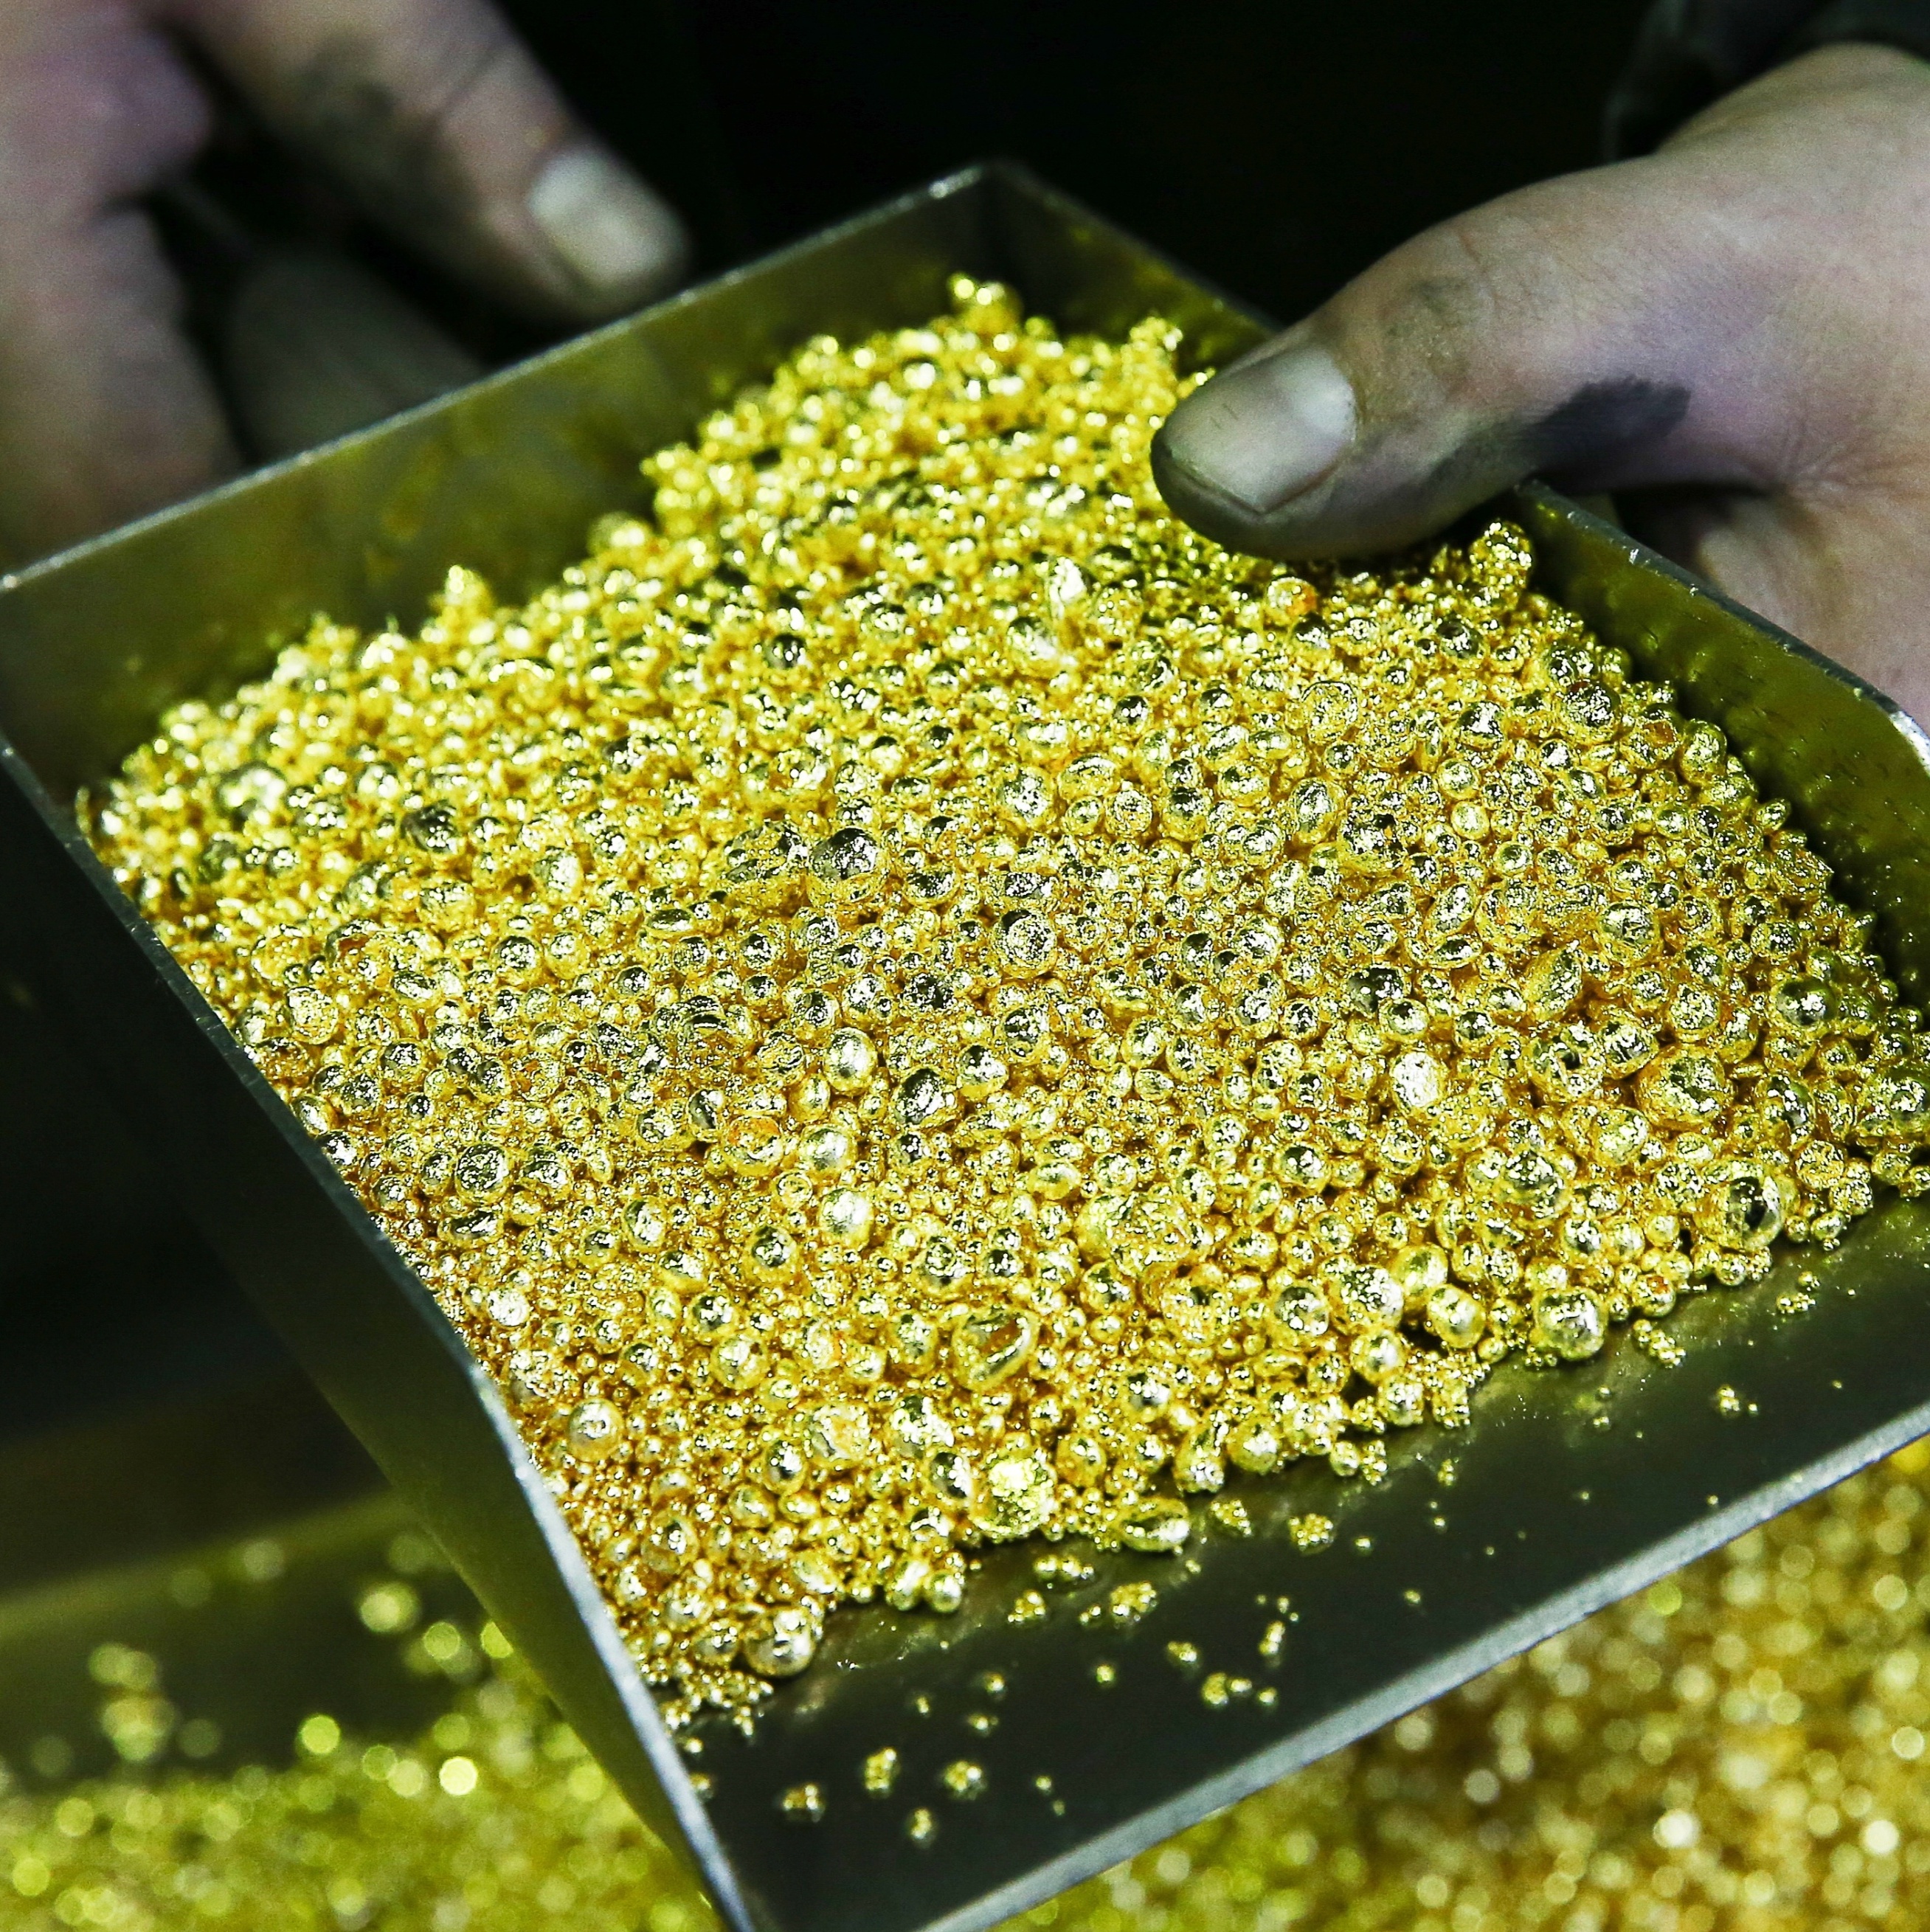 Entre 2021 e 2022, quase 30% do ouro extraído no Brasil proveio de